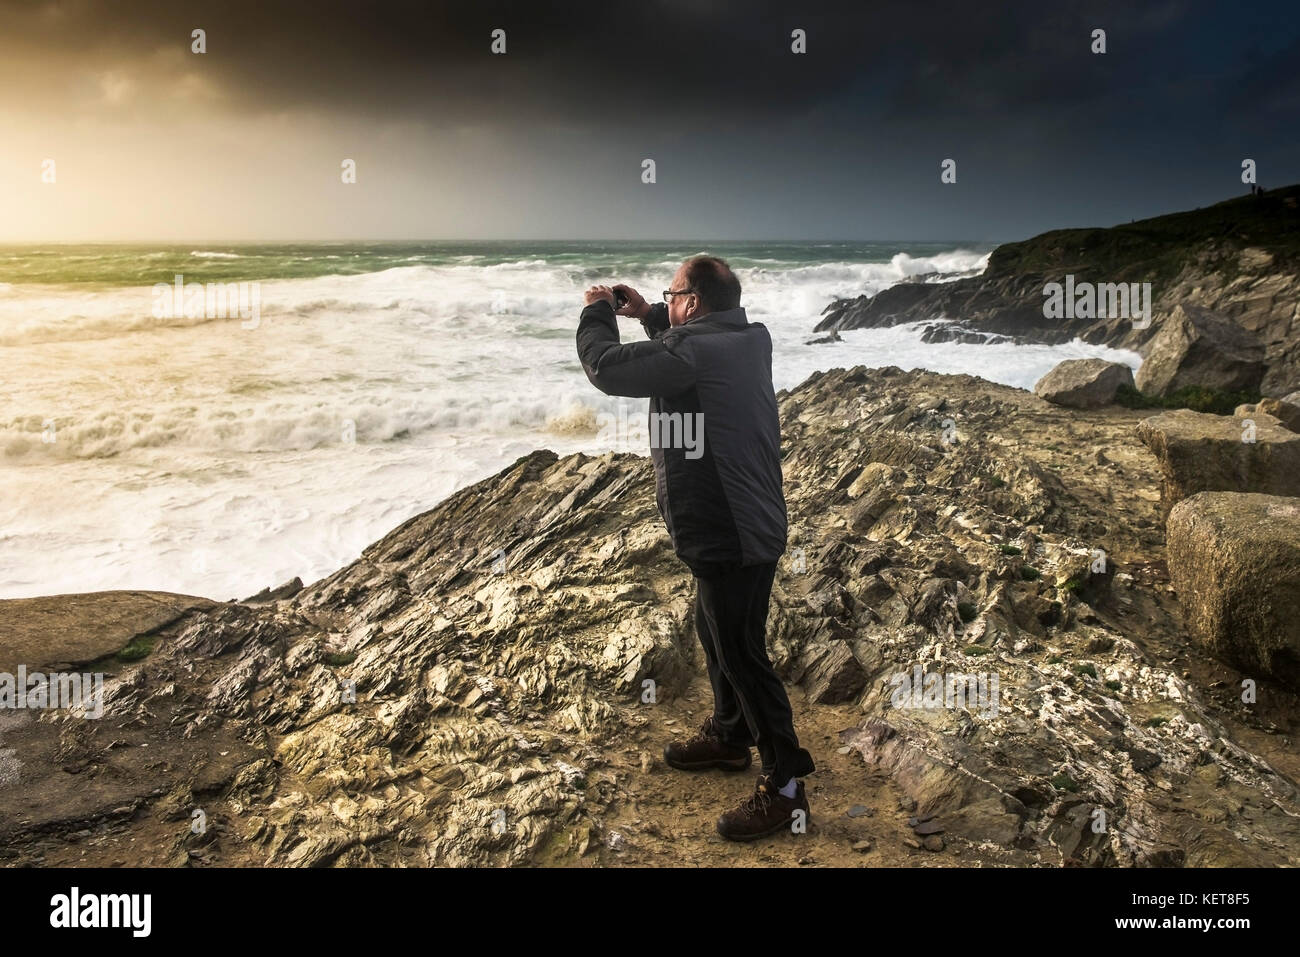 Tempesta Ophelia - un villeggiante che scatta una fotografia del Il mare è tempestoso, mentre Storm Ophelia colpisce la costa a. Newquay Cornwell Foto Stock